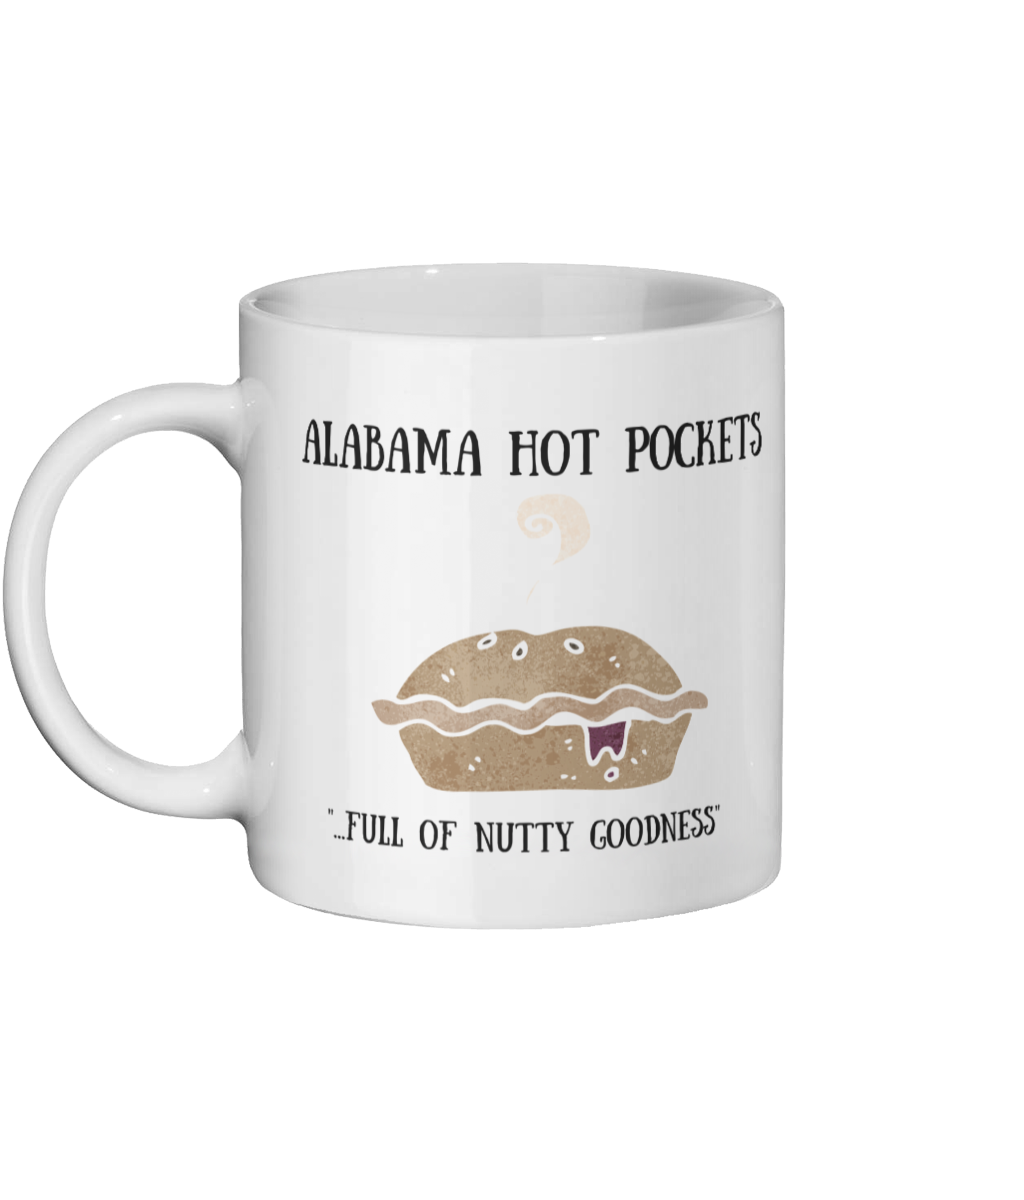 Alabama hot pocket picture